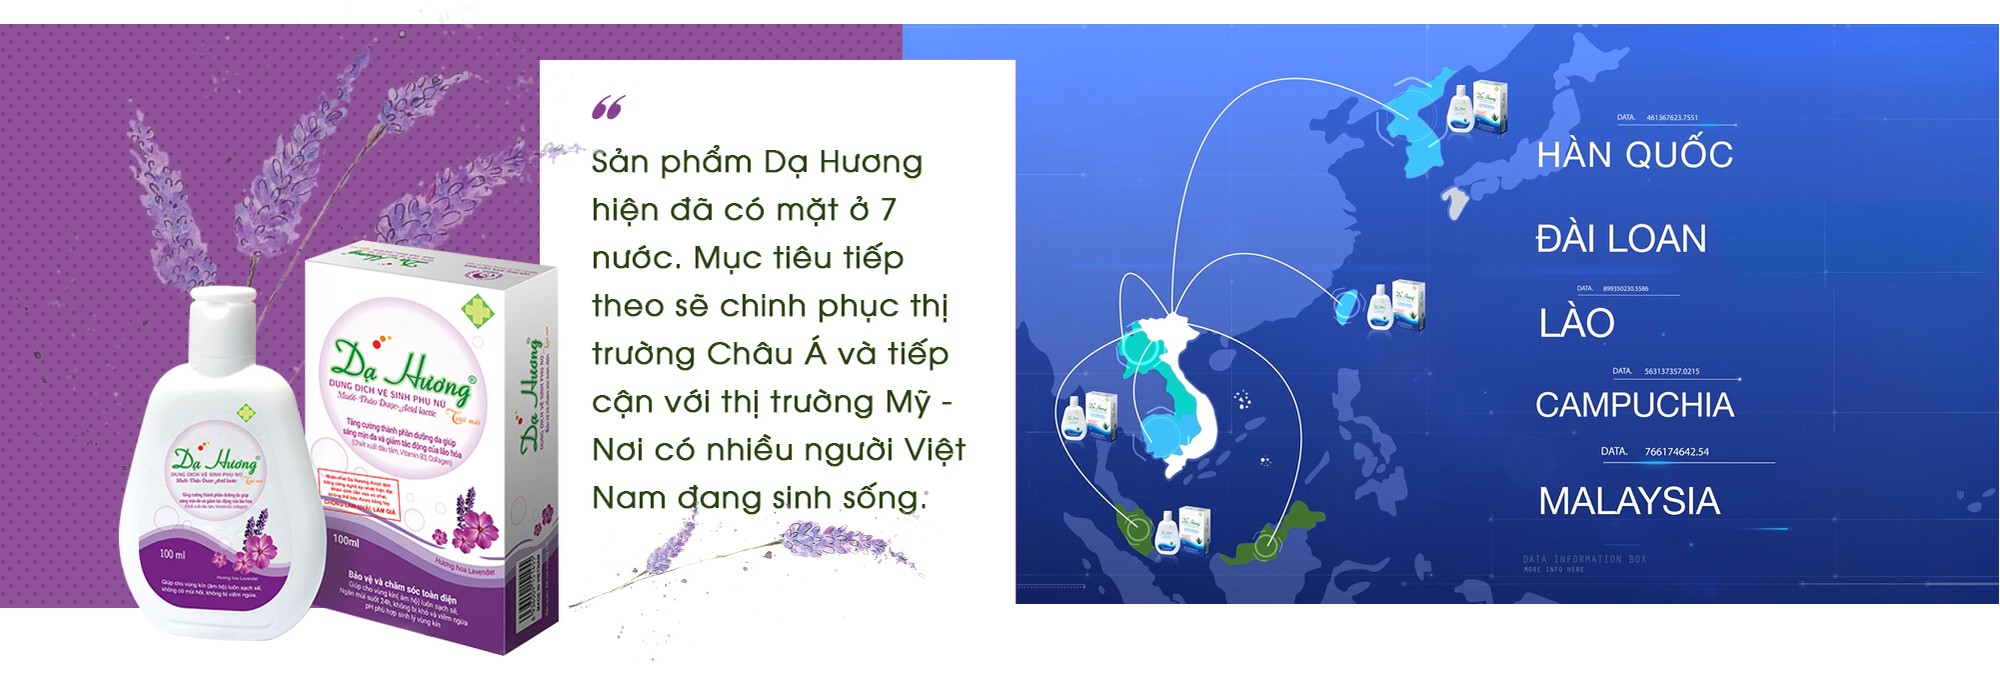 Dạ Hương và câu chuyện không chỉ thị phần đứng số 1 Việt Nam mà còn “phủ sóng” các nước Asean - Ảnh 13.